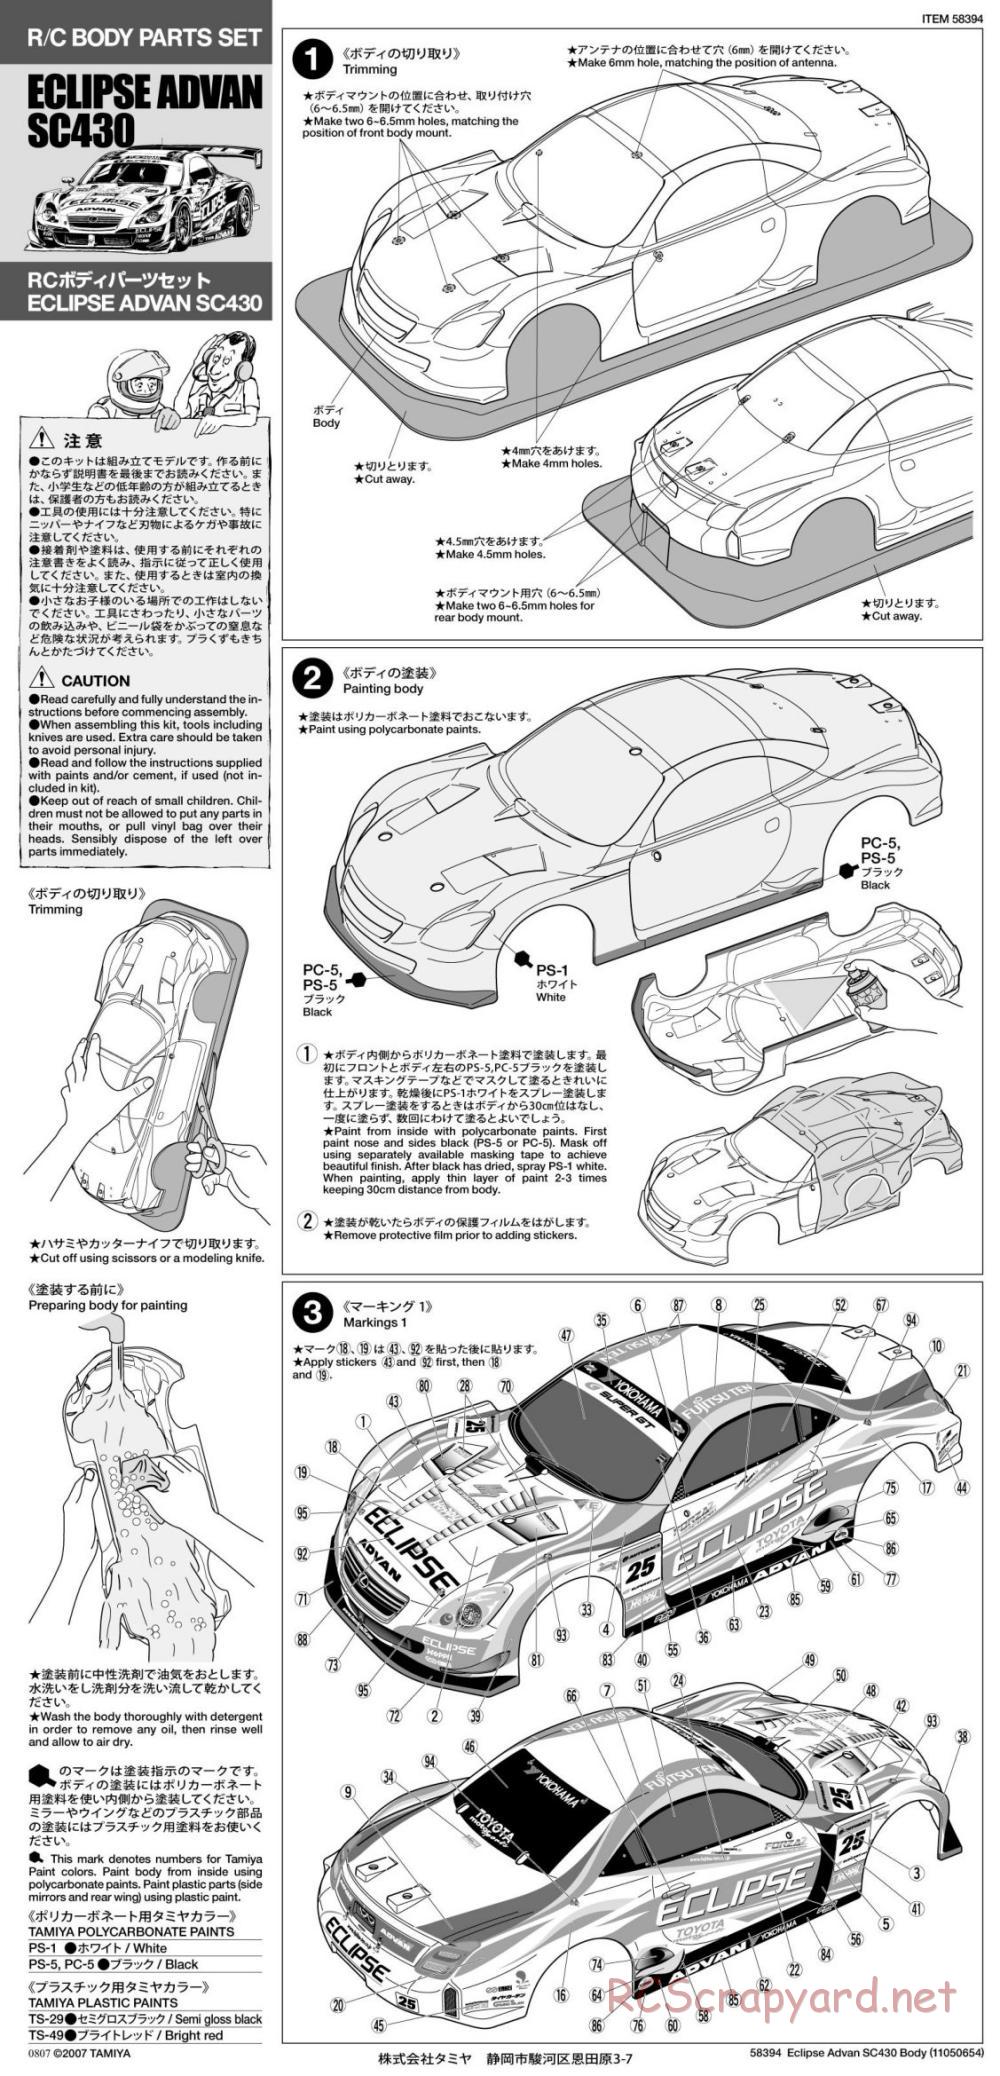 Tamiya - Eclipse Advan SC430 - TA05-IFS Chassis - Body Manual - Page 1